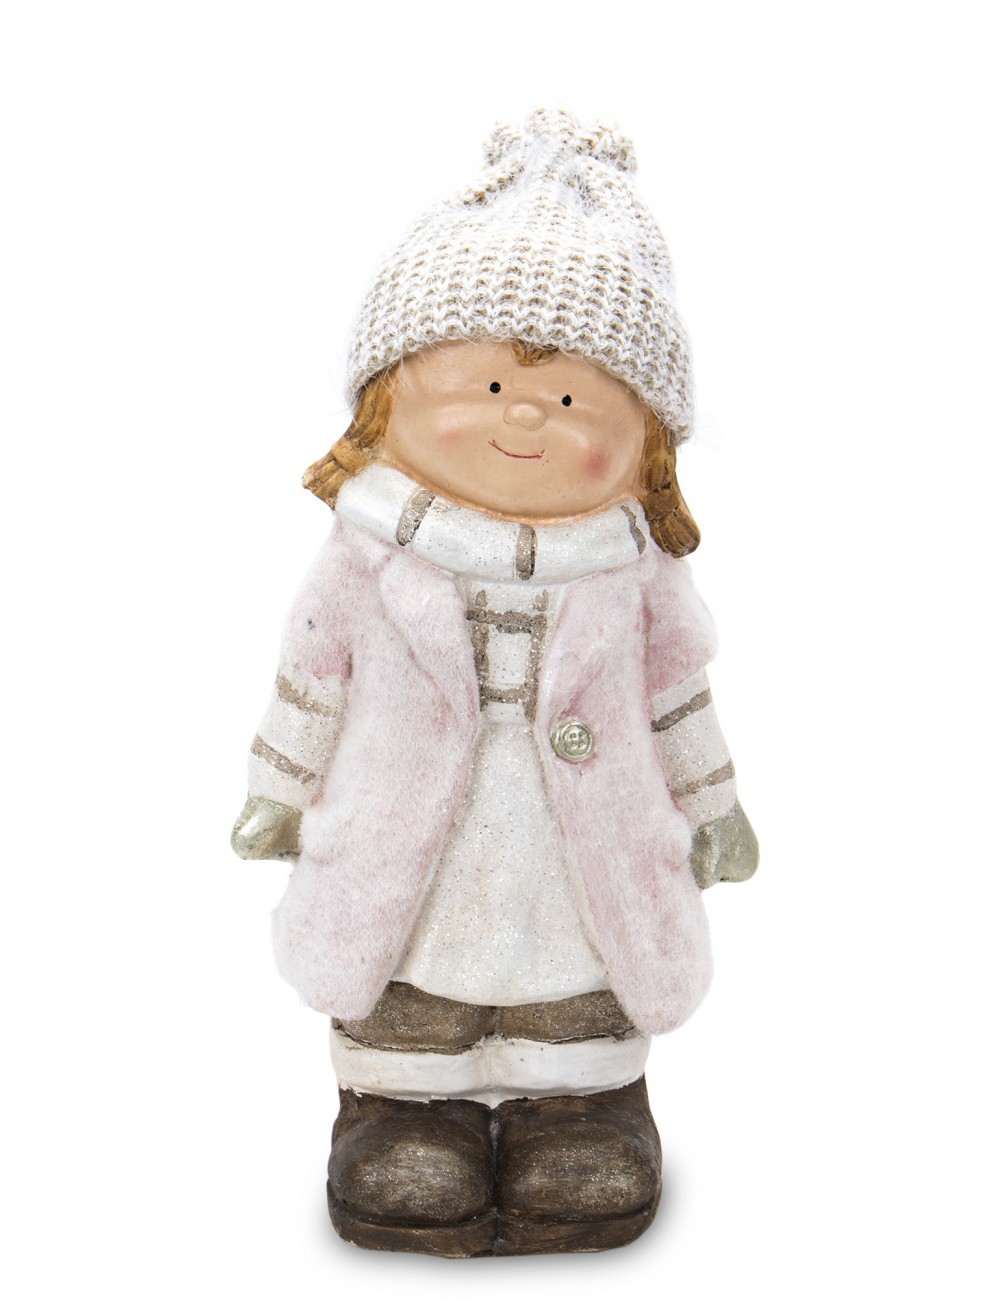 Figurka zimowa dziecko DZIEWCZYNKA różowy płaszcz 37 cm